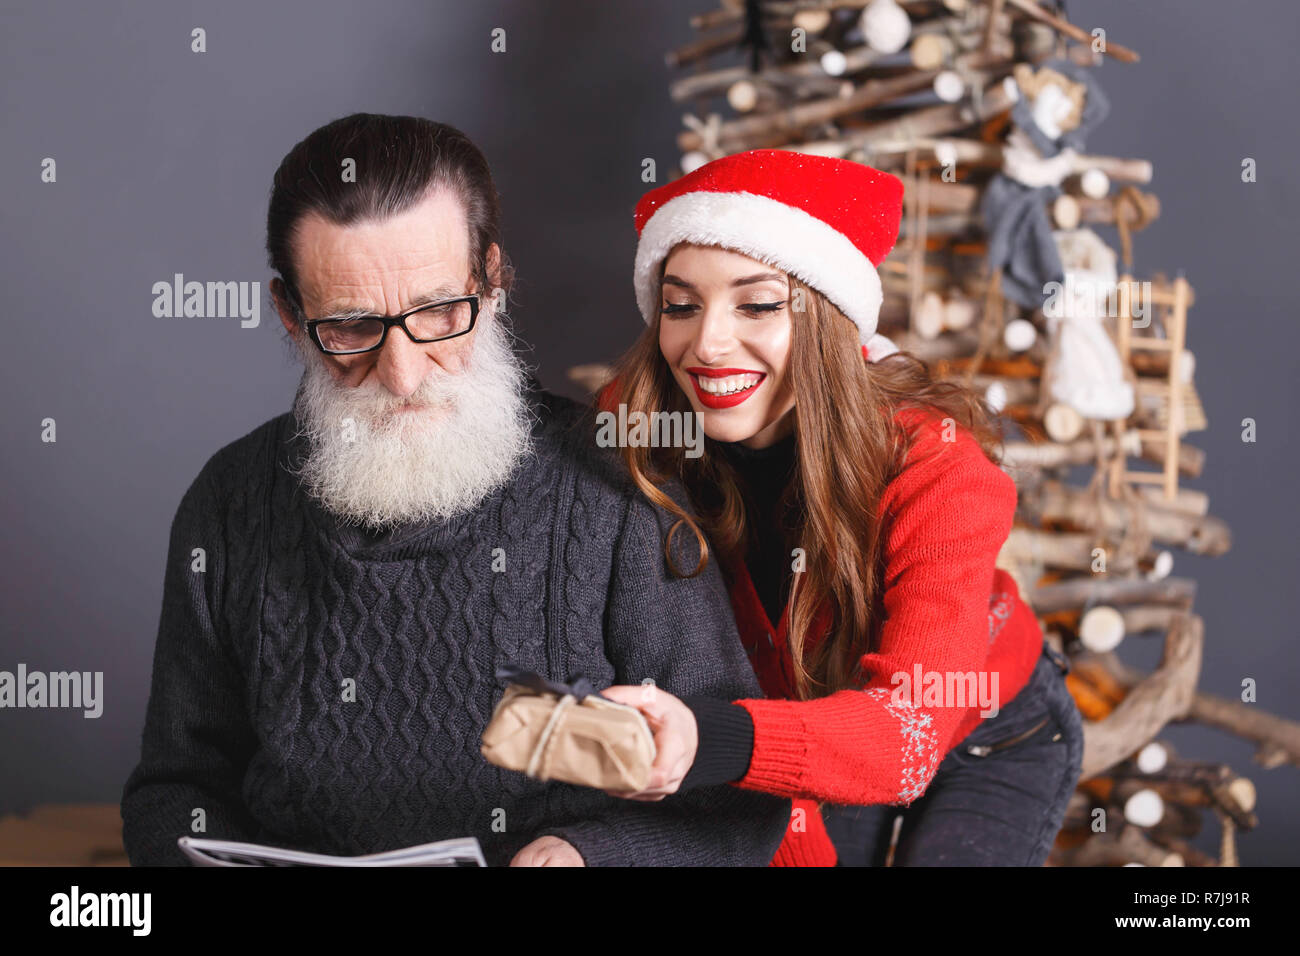 Attraktive langhaarigen Tochter im roten Pullover tragen Santa Hut gibt ein Geschenk zu Ihren bärtigen älteren Vater tragen graue Strickjacke, Silvester, Weihnachten, Feiertage, Souvenirs, Geschenke, Shopping, Rabatte, Geschäfte, Snow Maiden Santa Claus, Make-up, Frisur, Karneval. Stockfoto